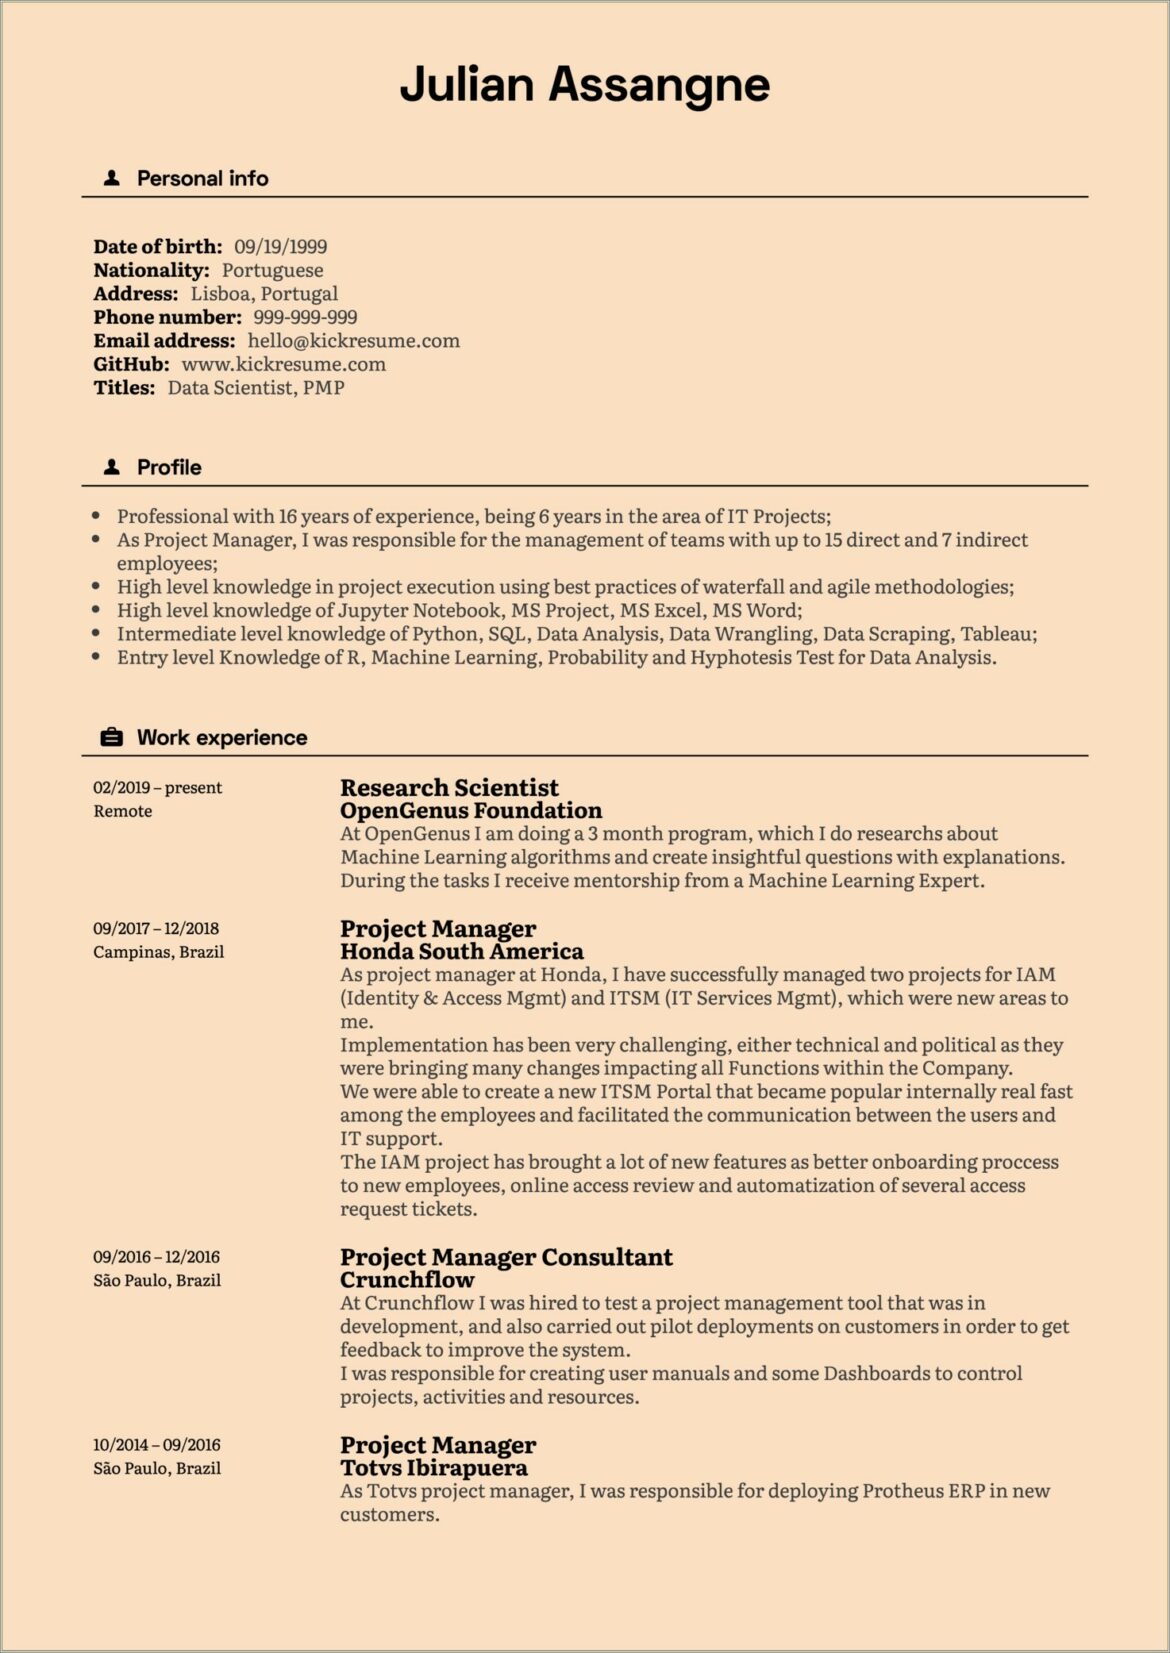 Sample Resume For It Senior Manager